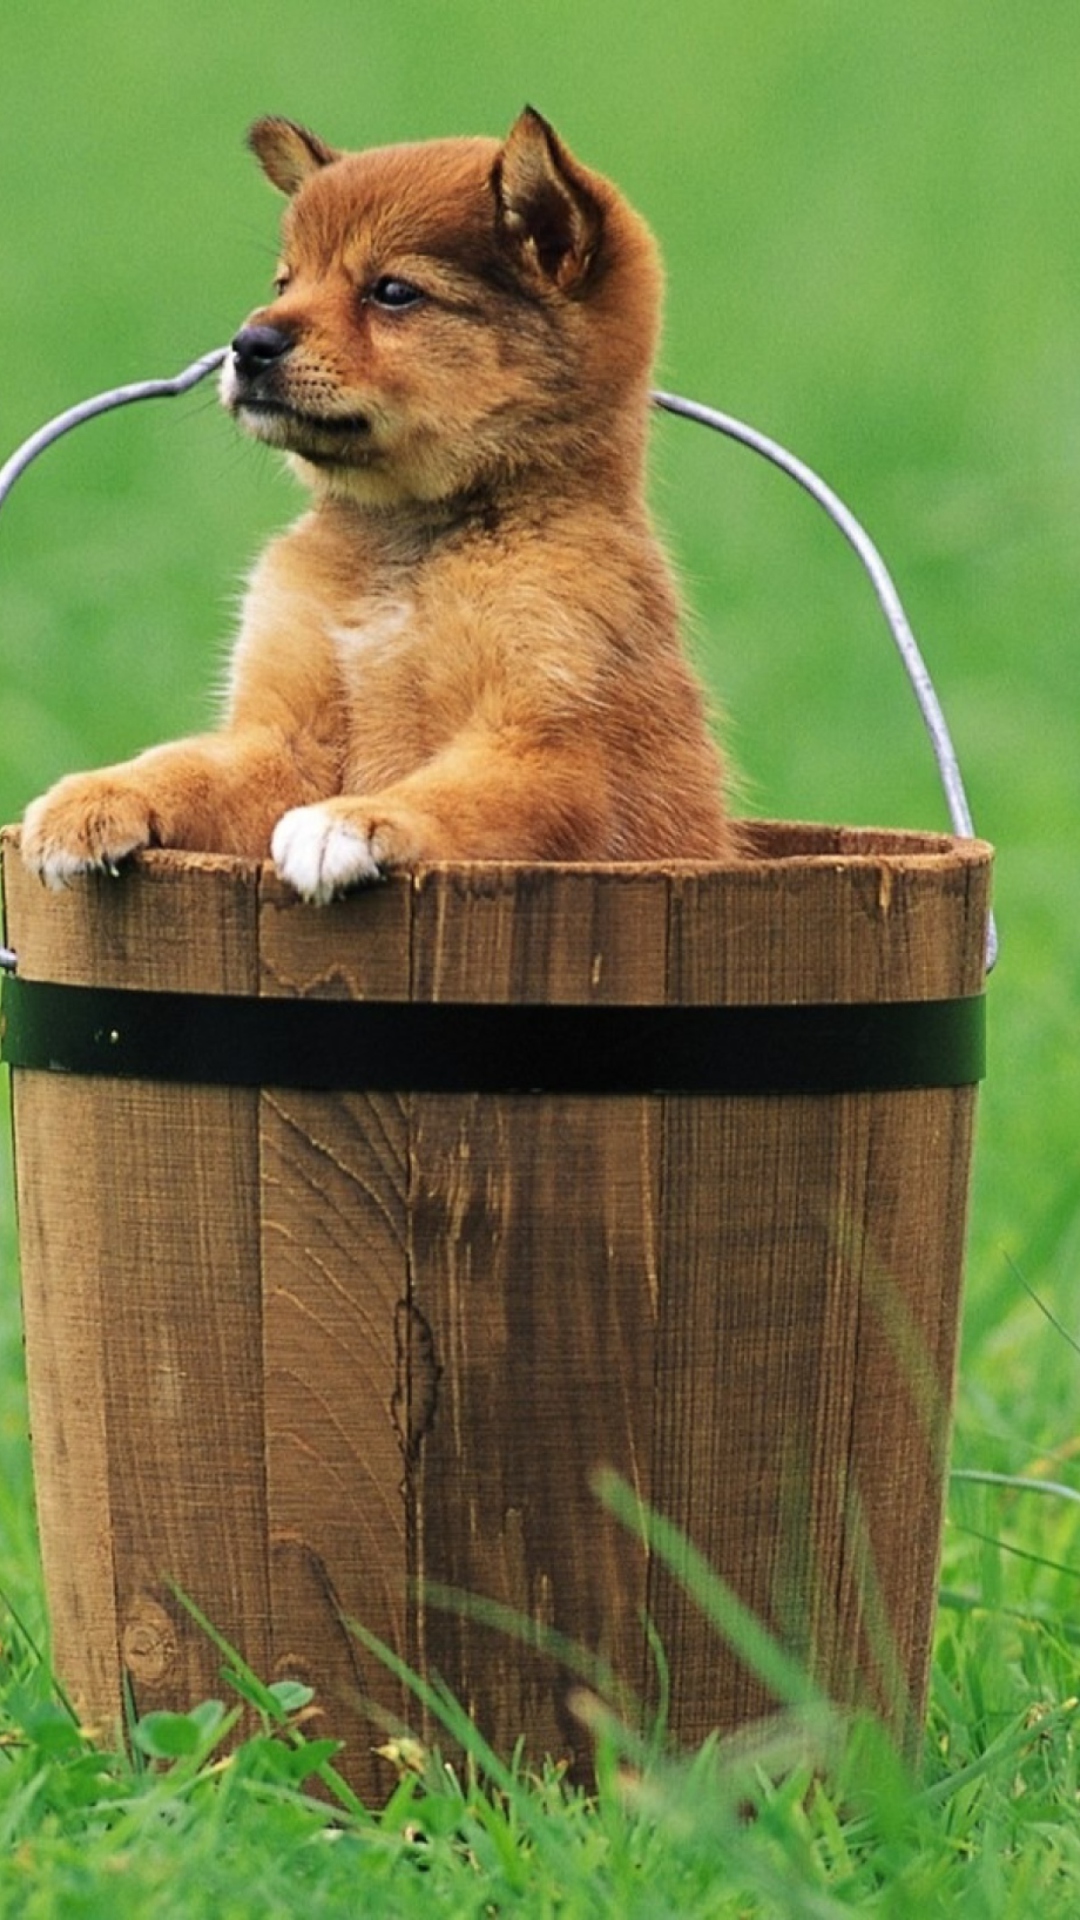 Puppy Dog In Bucket wallpaper 1080x1920